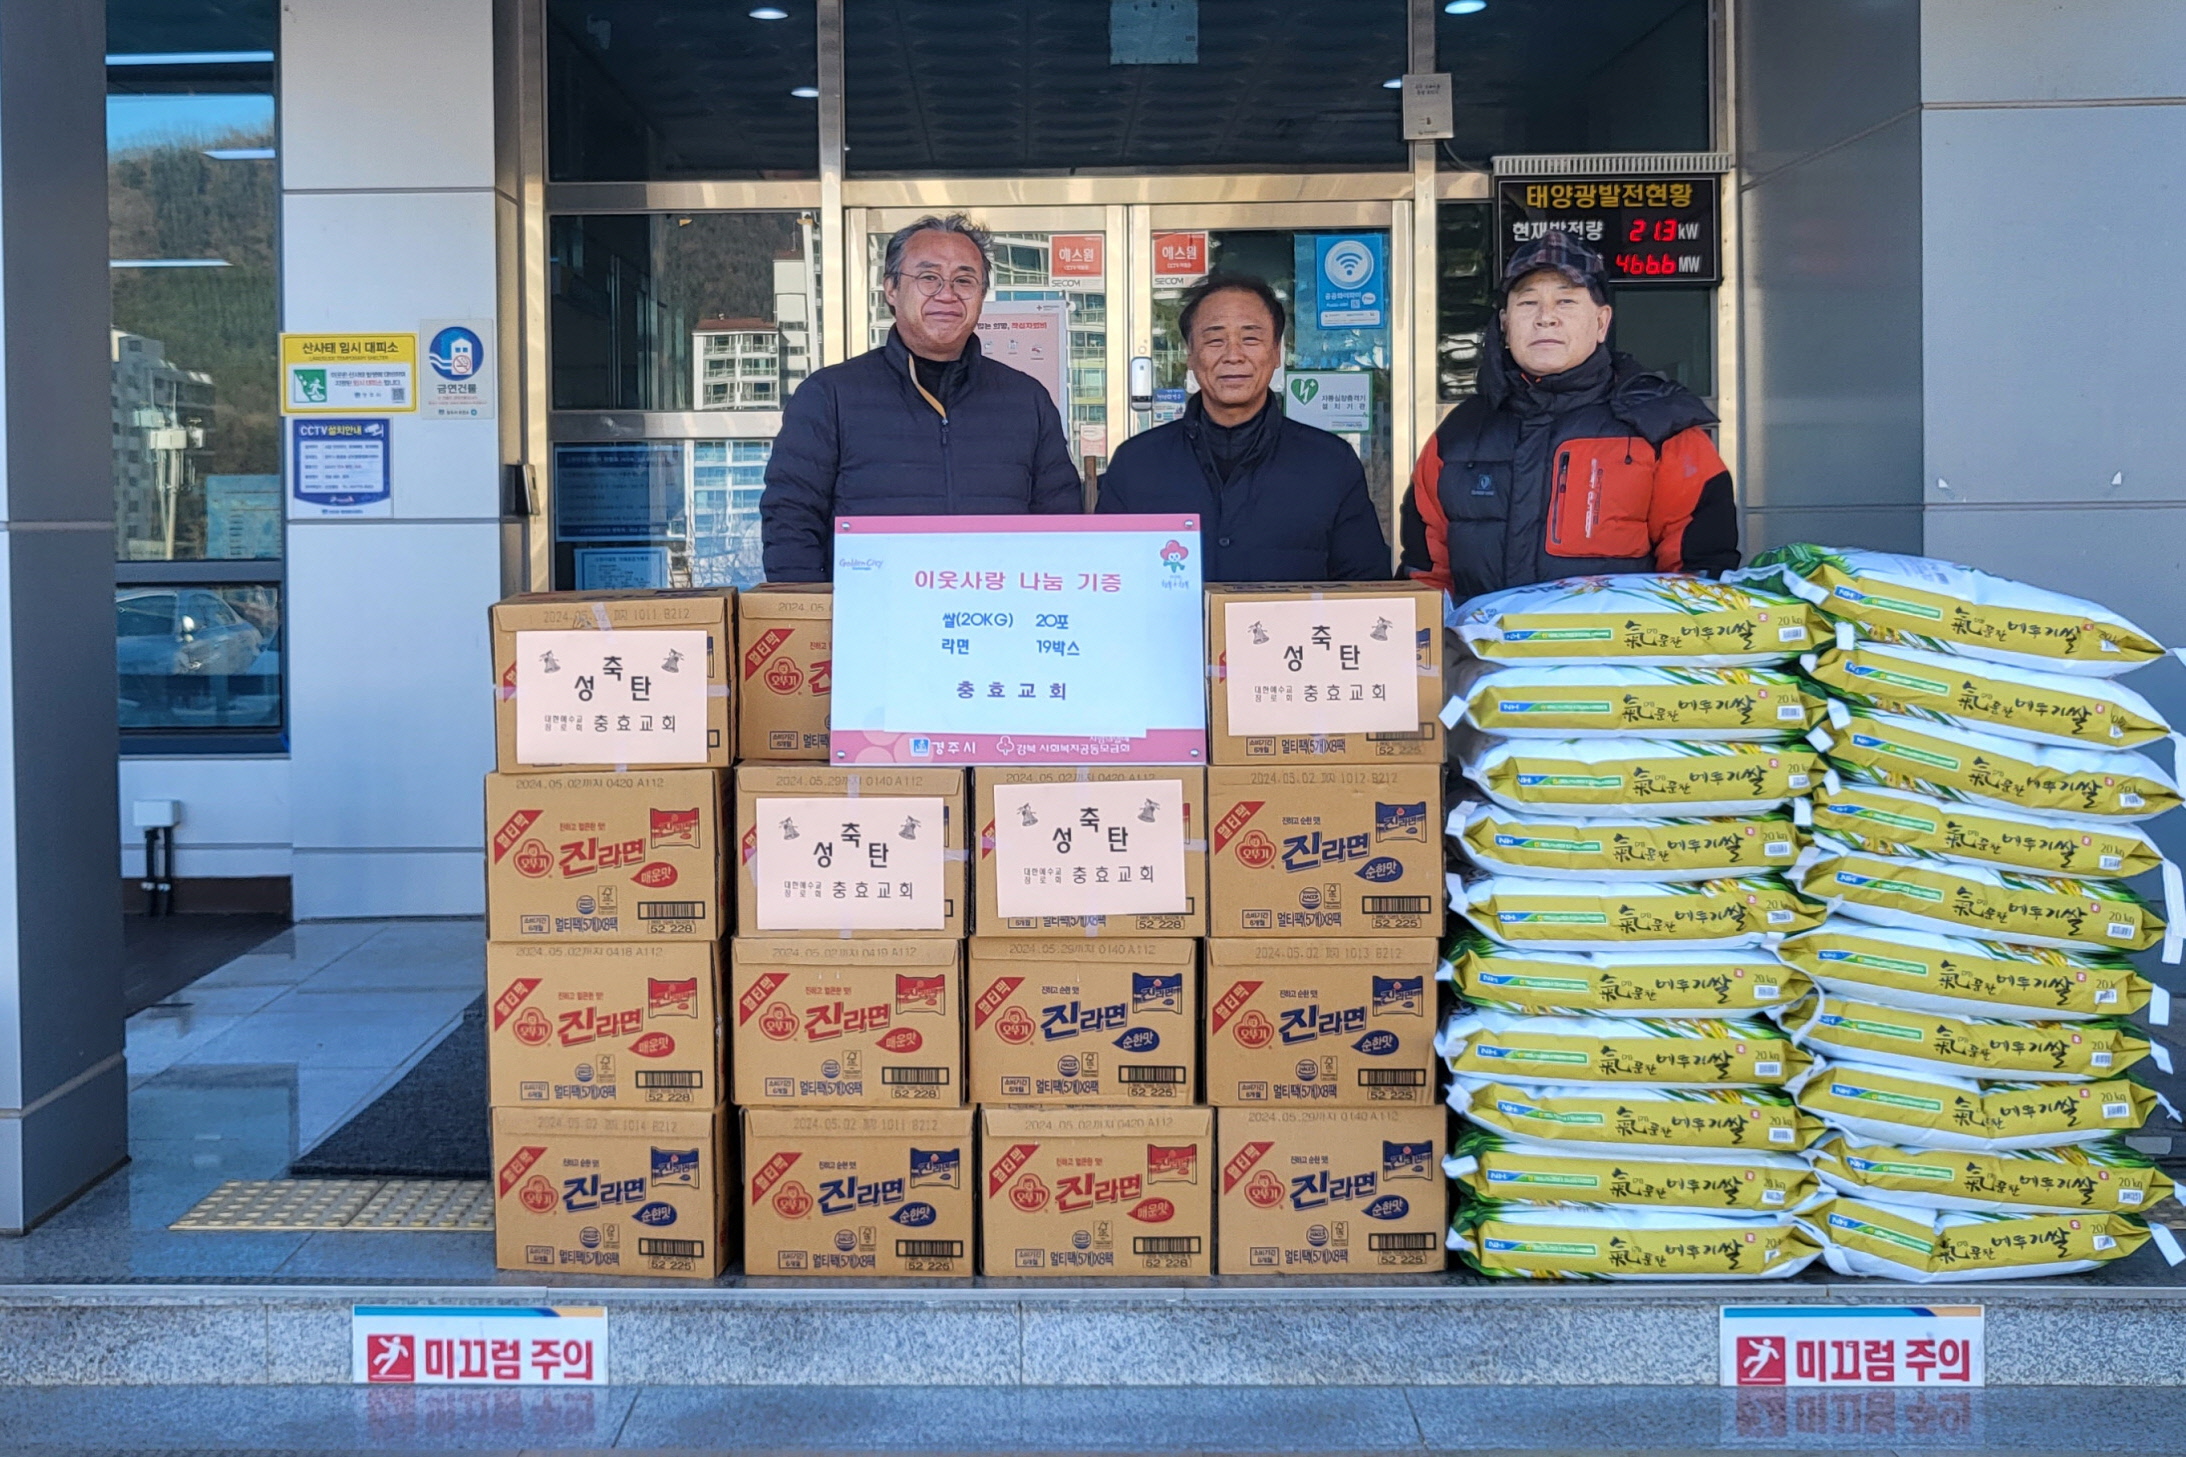 지난 22일 선도동 충효교회에서 지역 내 어려운 이웃들을 위해 쌀 20포와 라면 19박스를 기부했다.